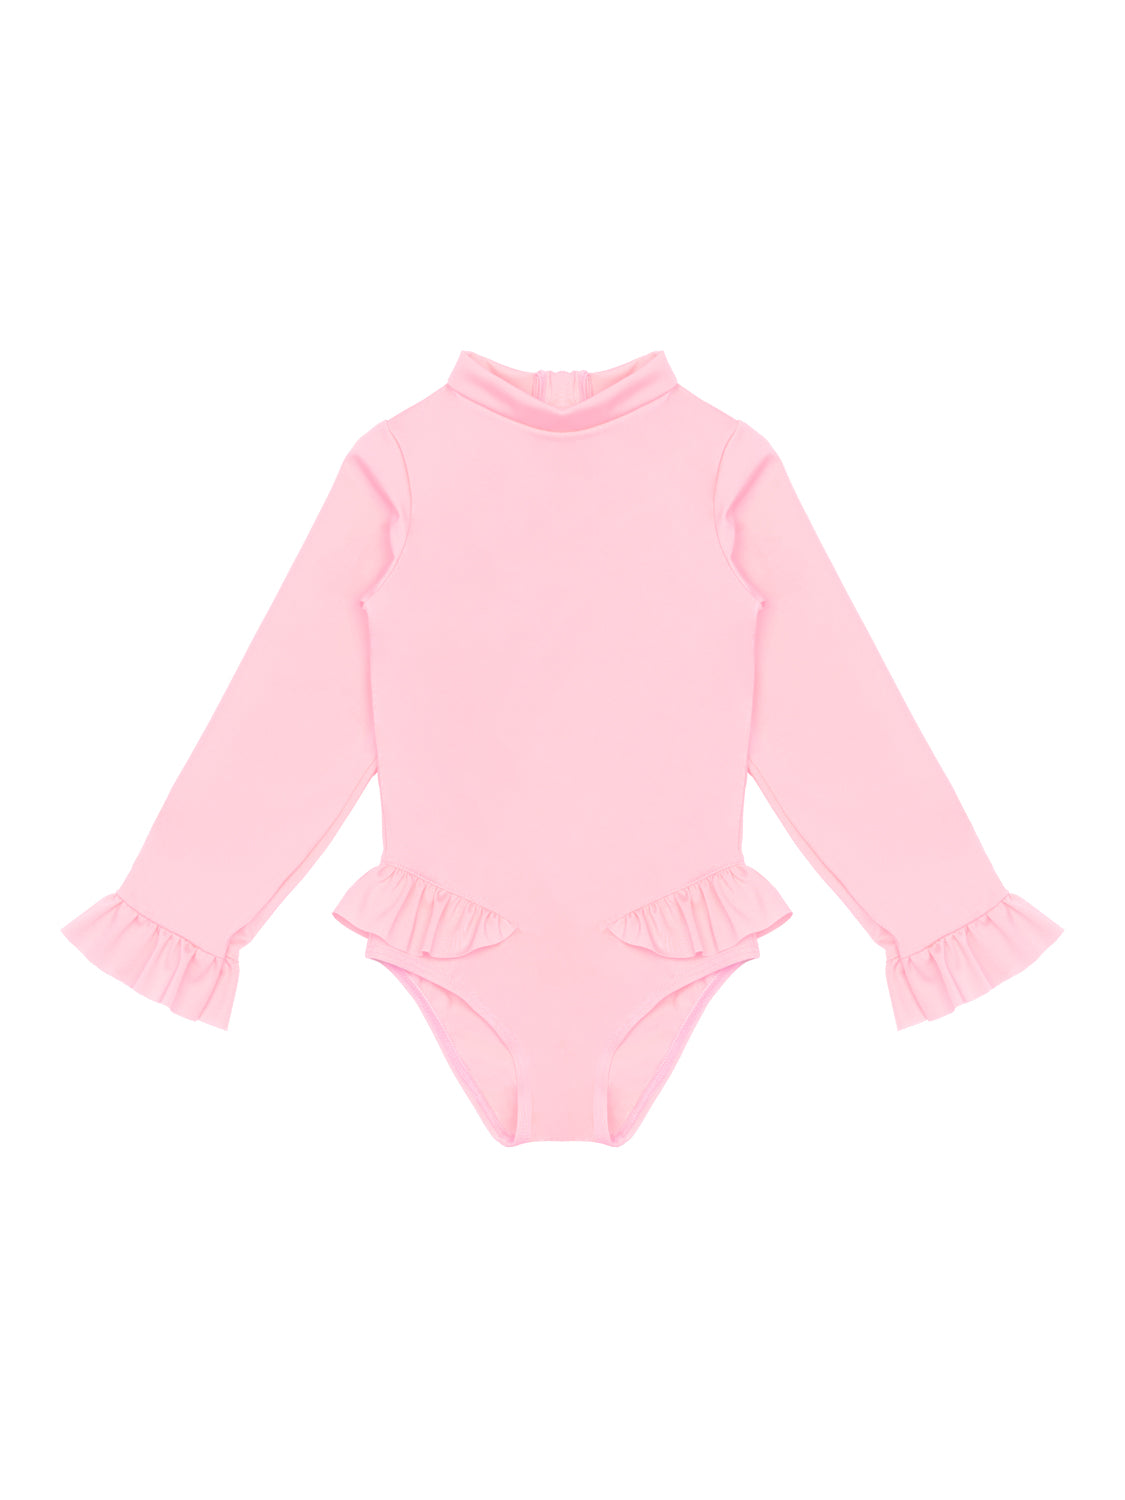 Langarm-Badeanzug - Light Pink